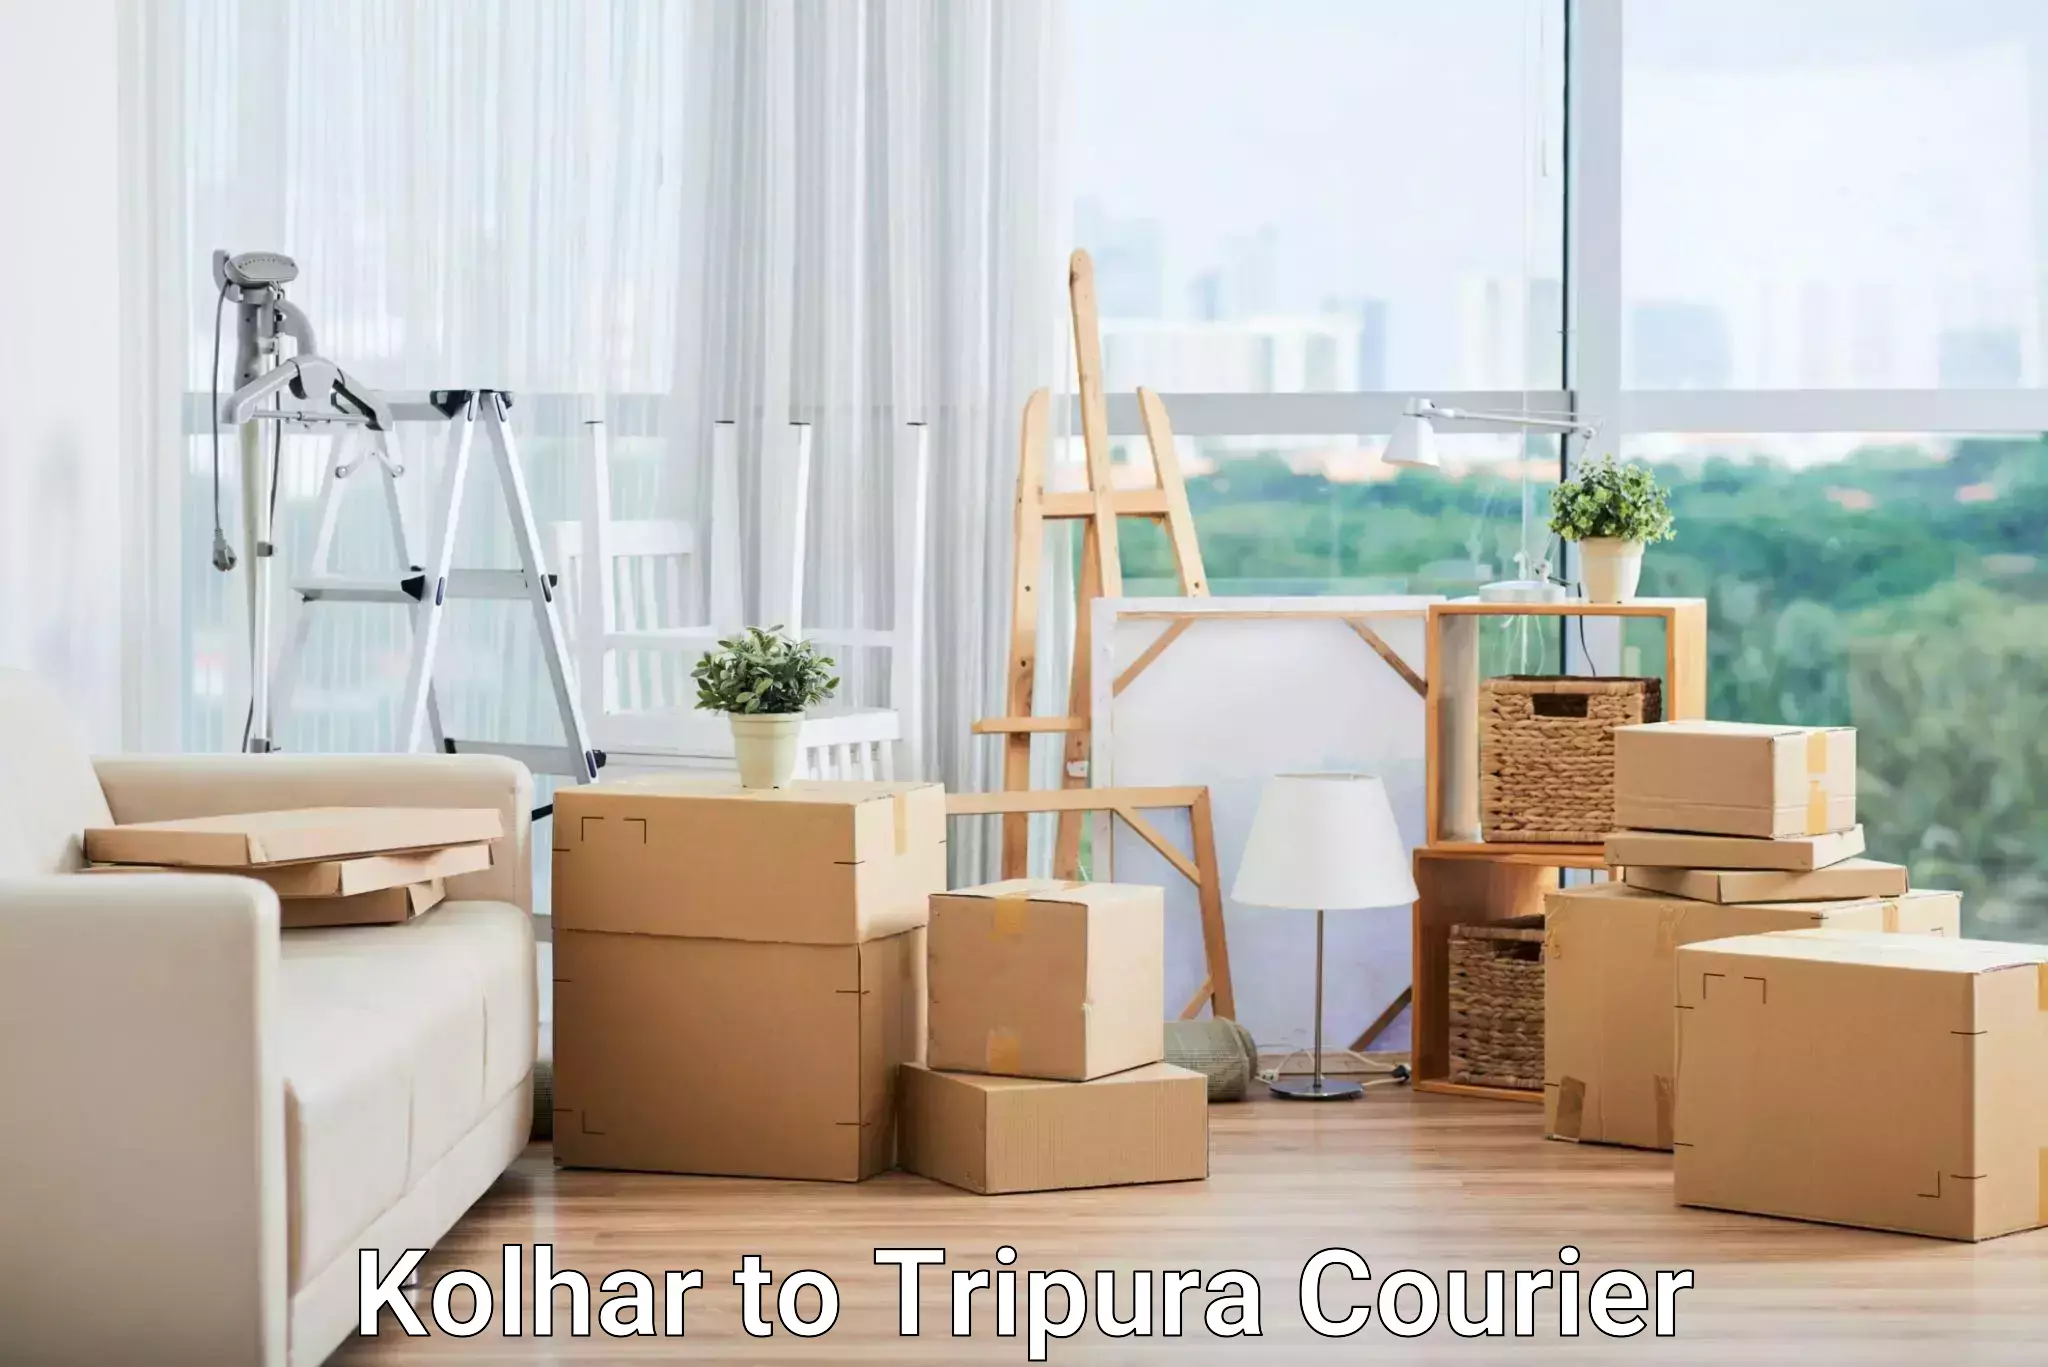 Efficient parcel tracking Kolhar to Udaipur Tripura